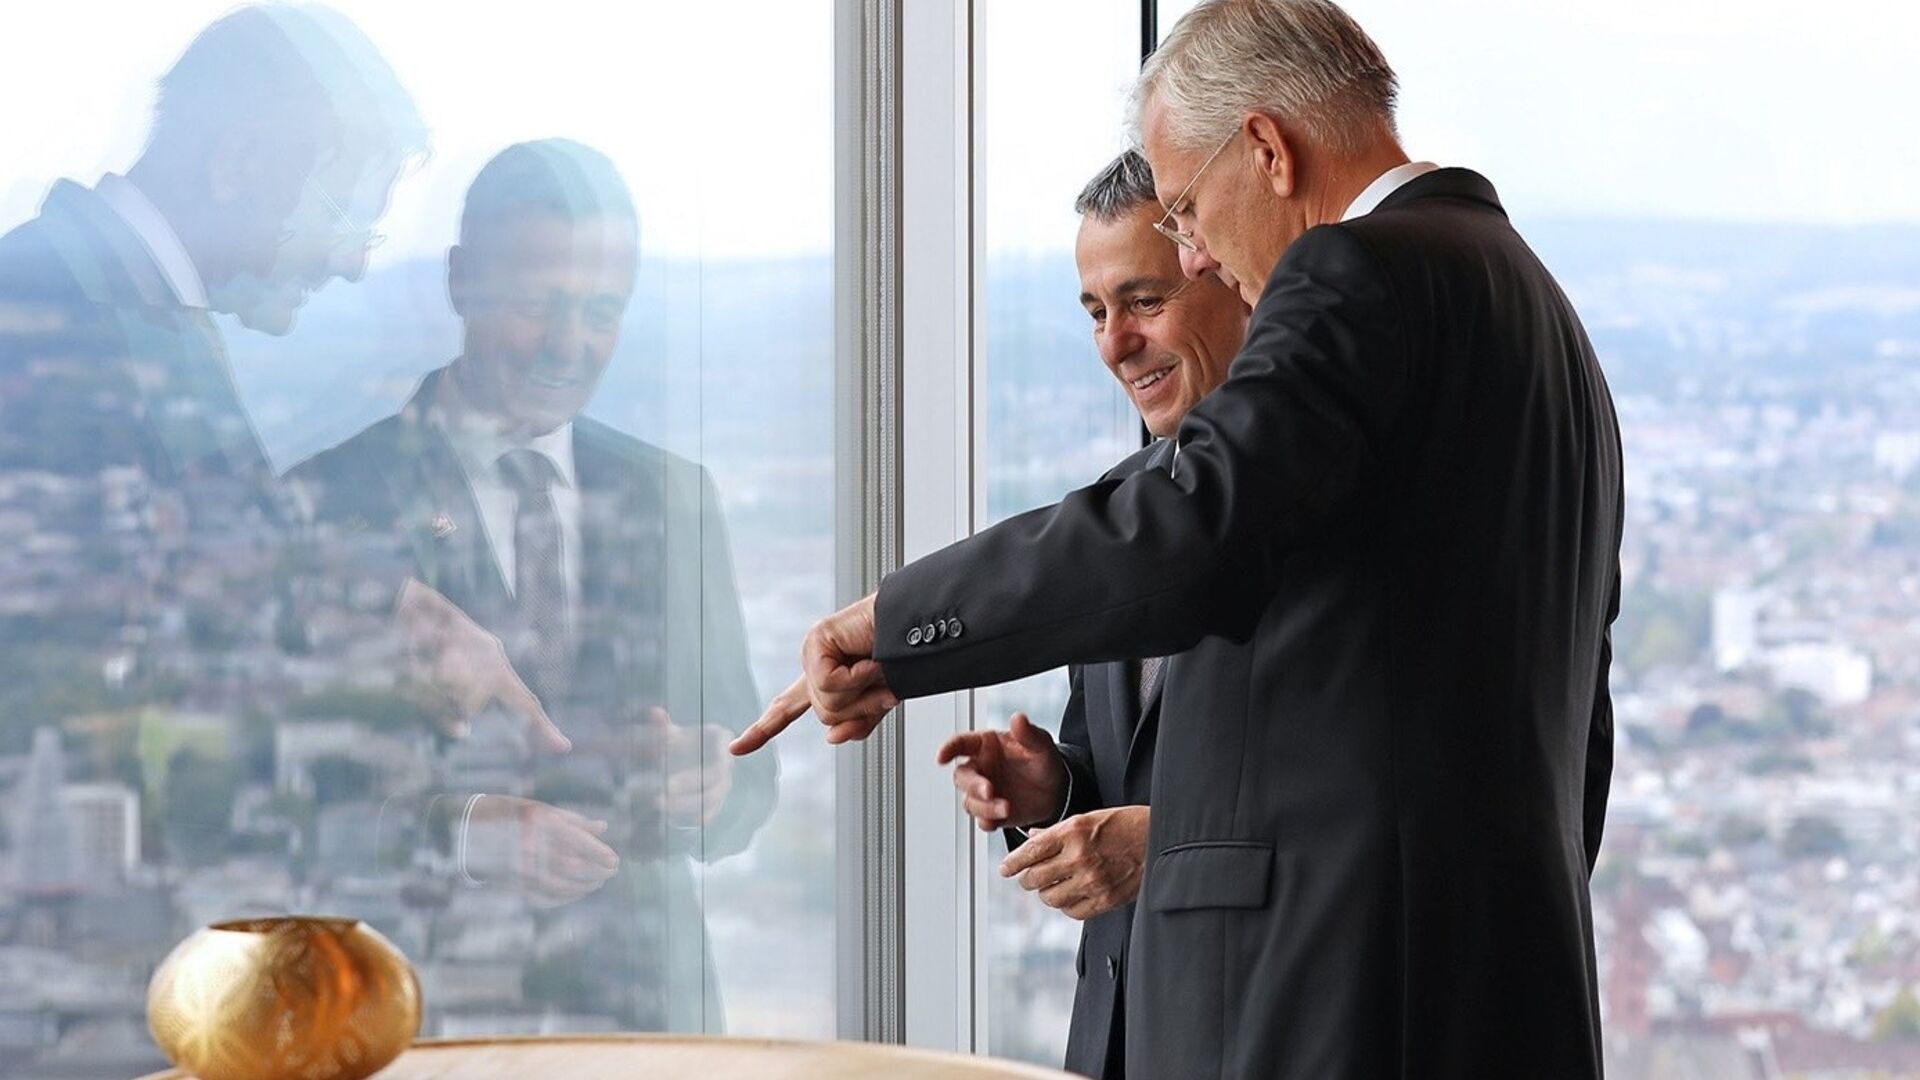 Ignazio Cassis, Bundespräsident der Schweizerischen Eidgenossenschaft, und Christoph Franz, Präsident der Roche-Gruppe, bei der Einweihung des Turms 2 des Standorts Basel am 2. September 2022